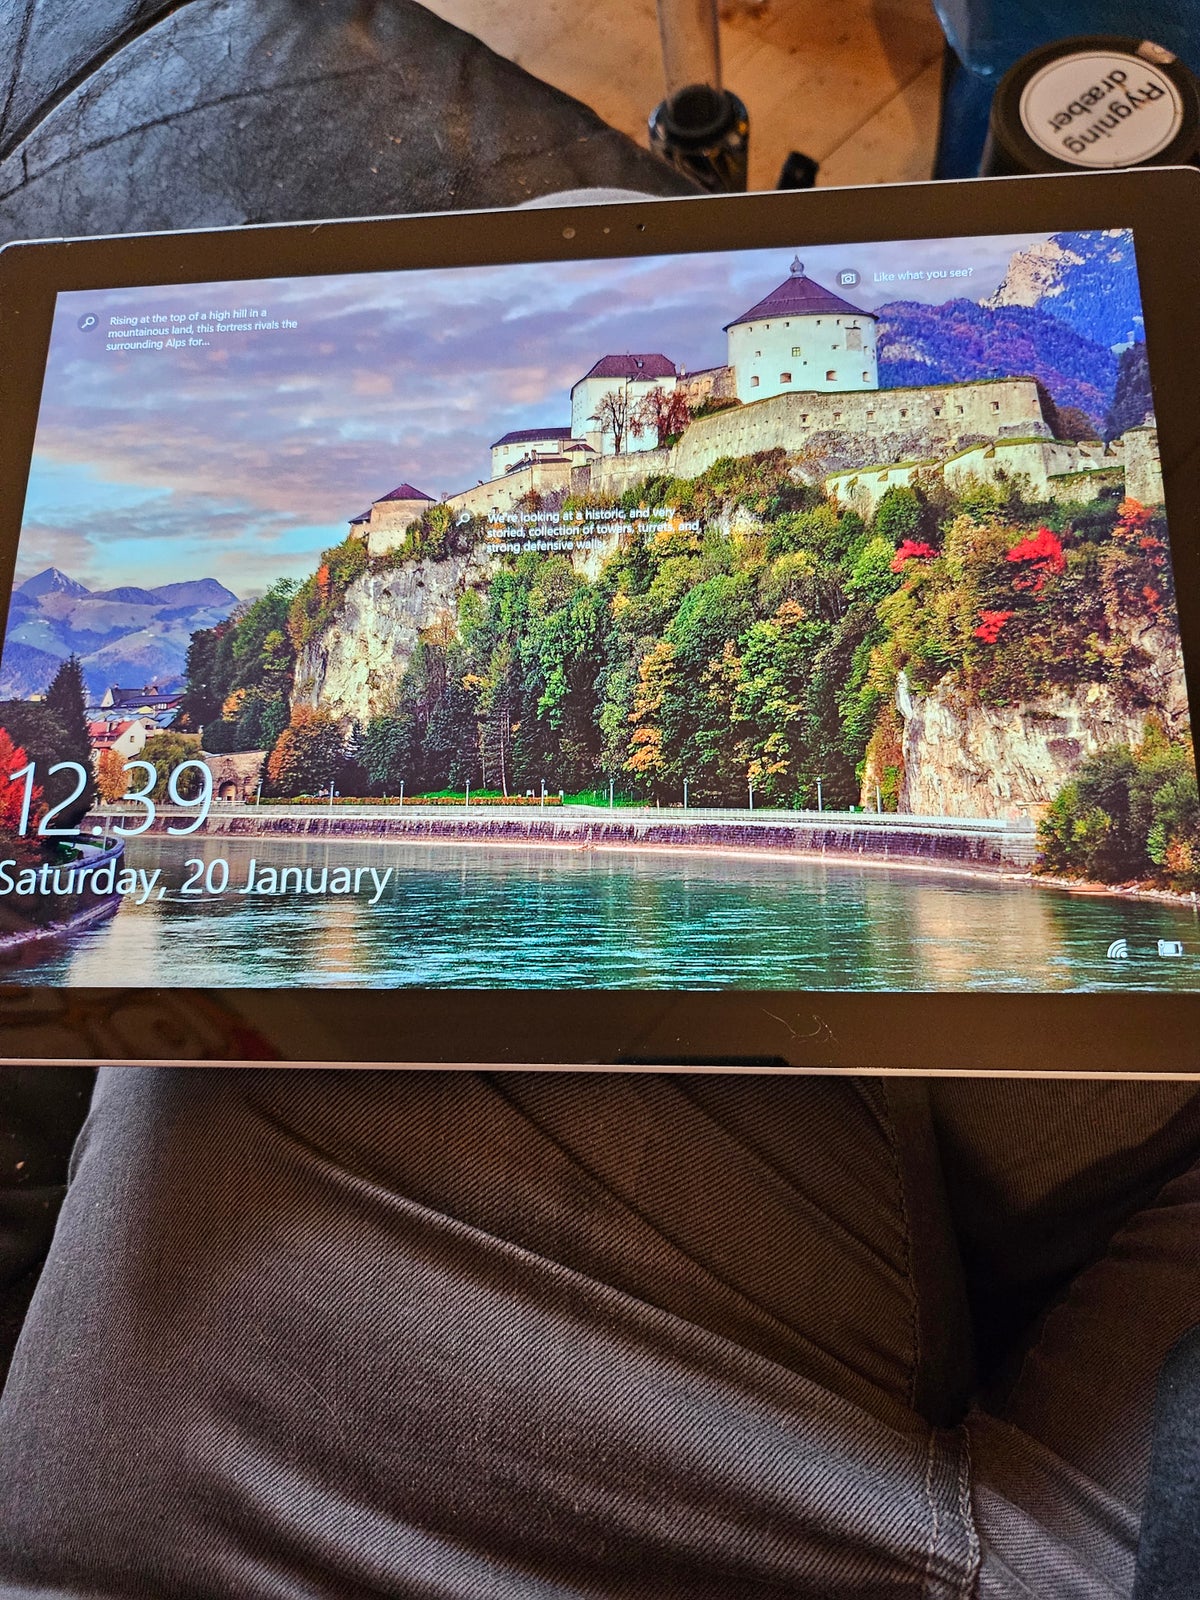 Microsoft, Microsoft Surface Pro 3 | 12